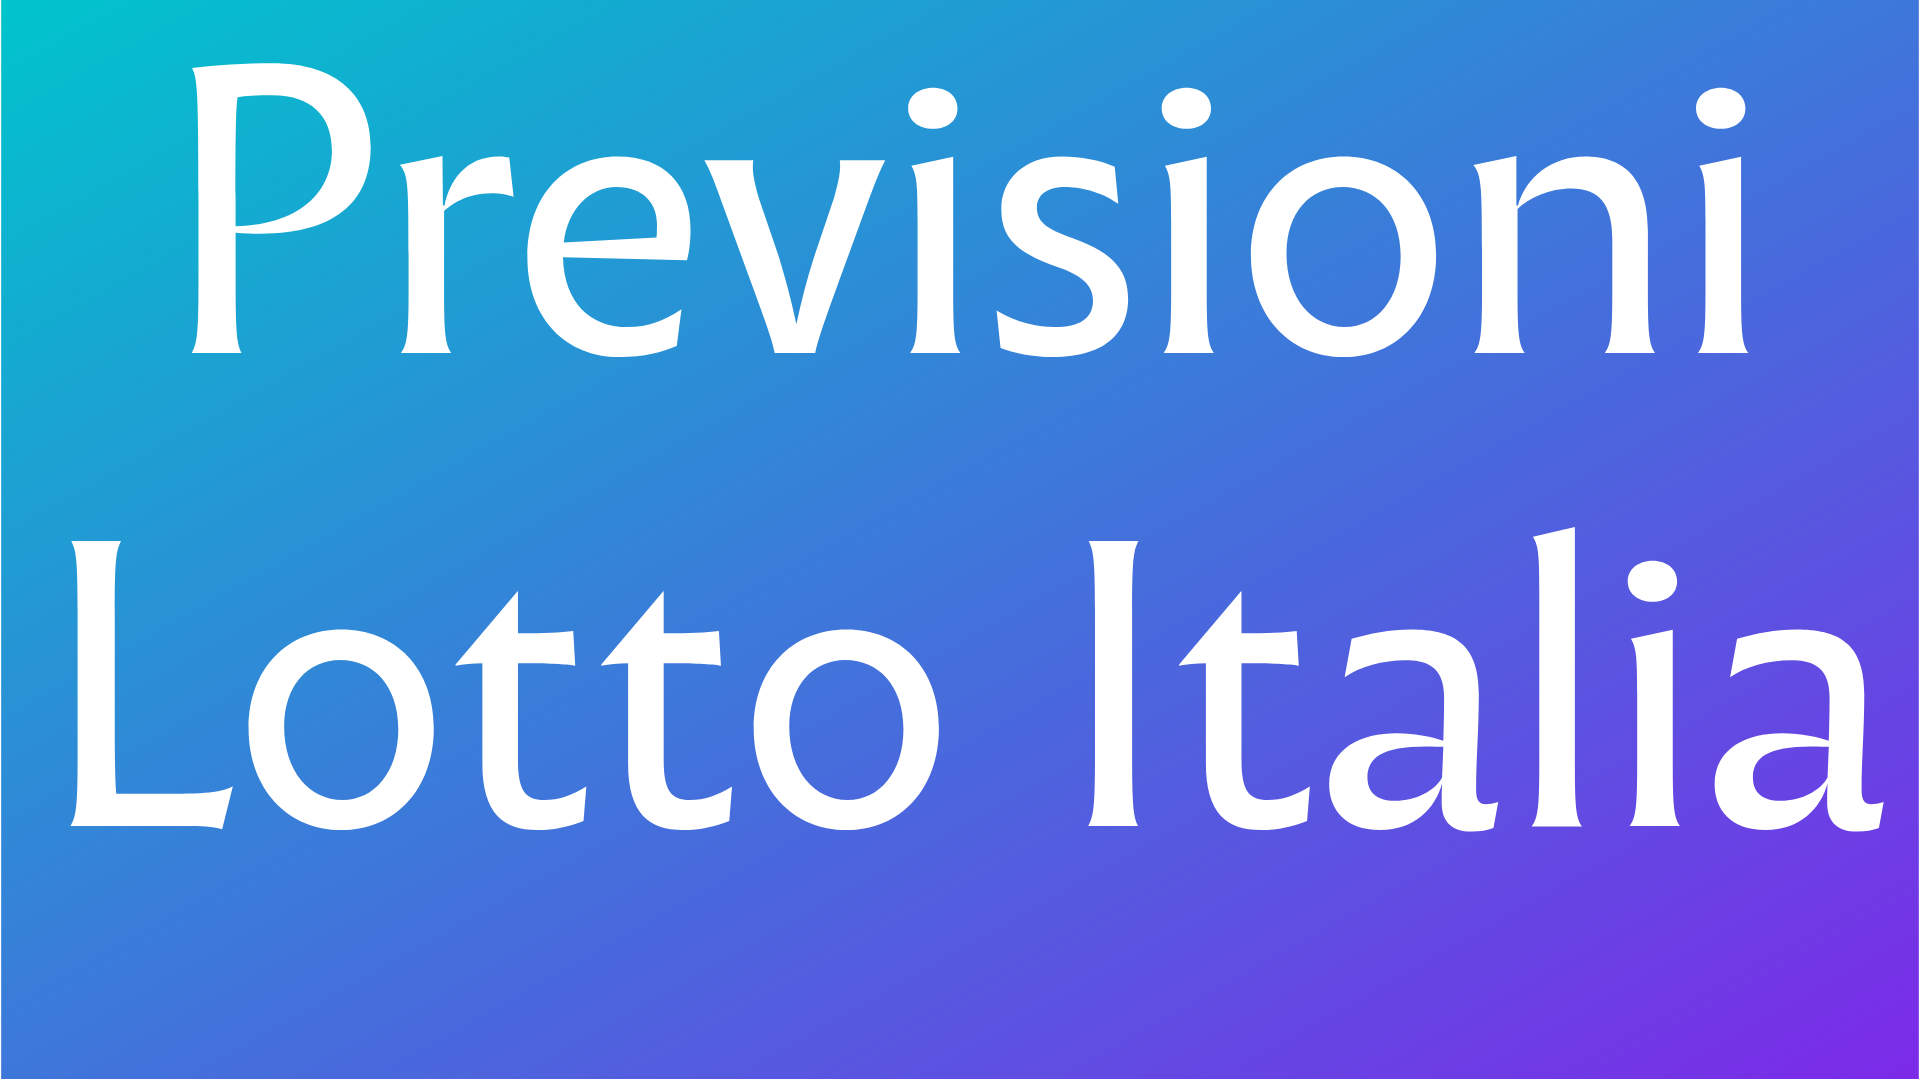 Previsioni Lotto Italia